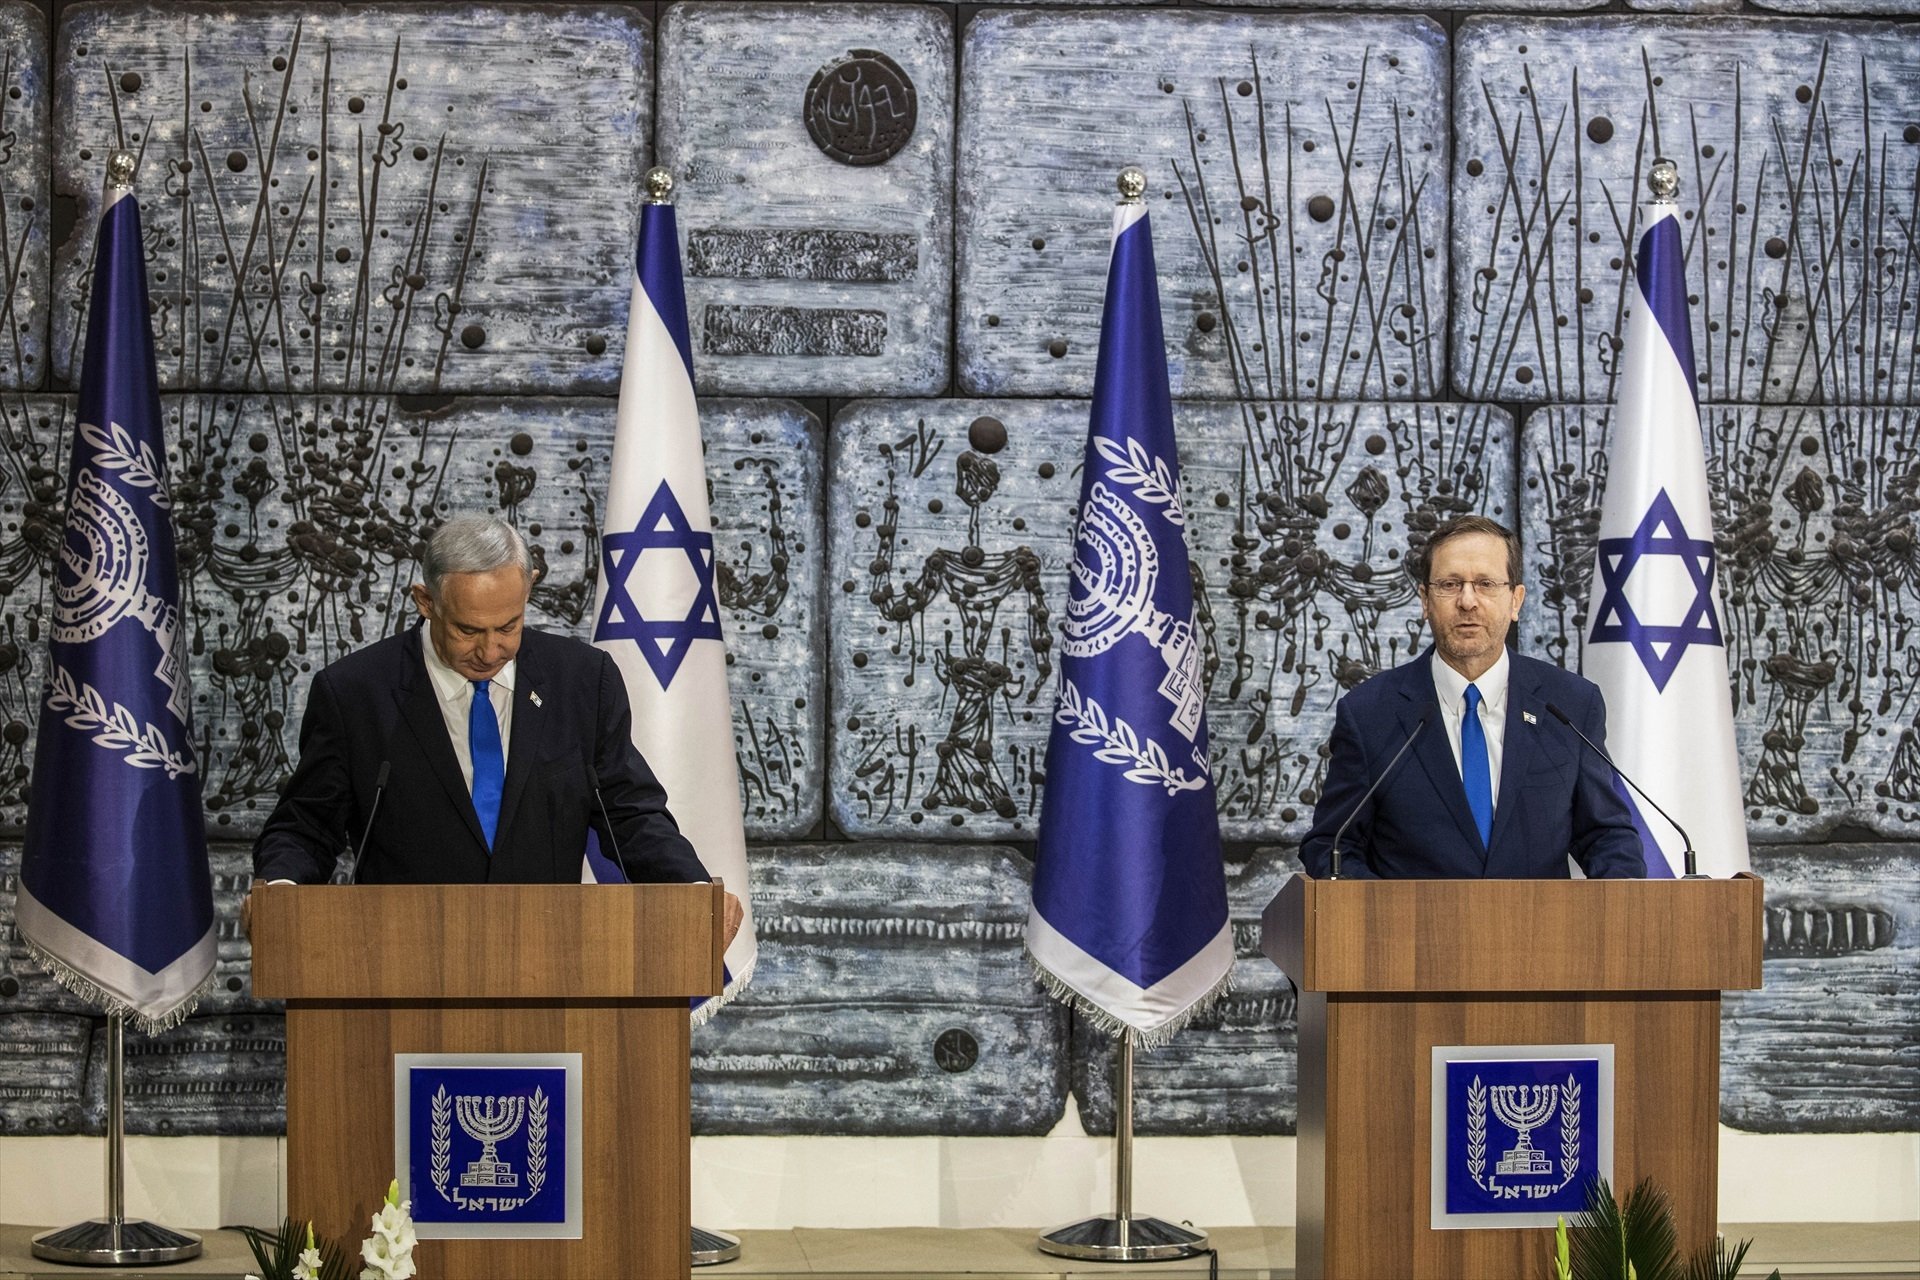 El president d'Israel demana aturar "immediatament" la reforma judicial